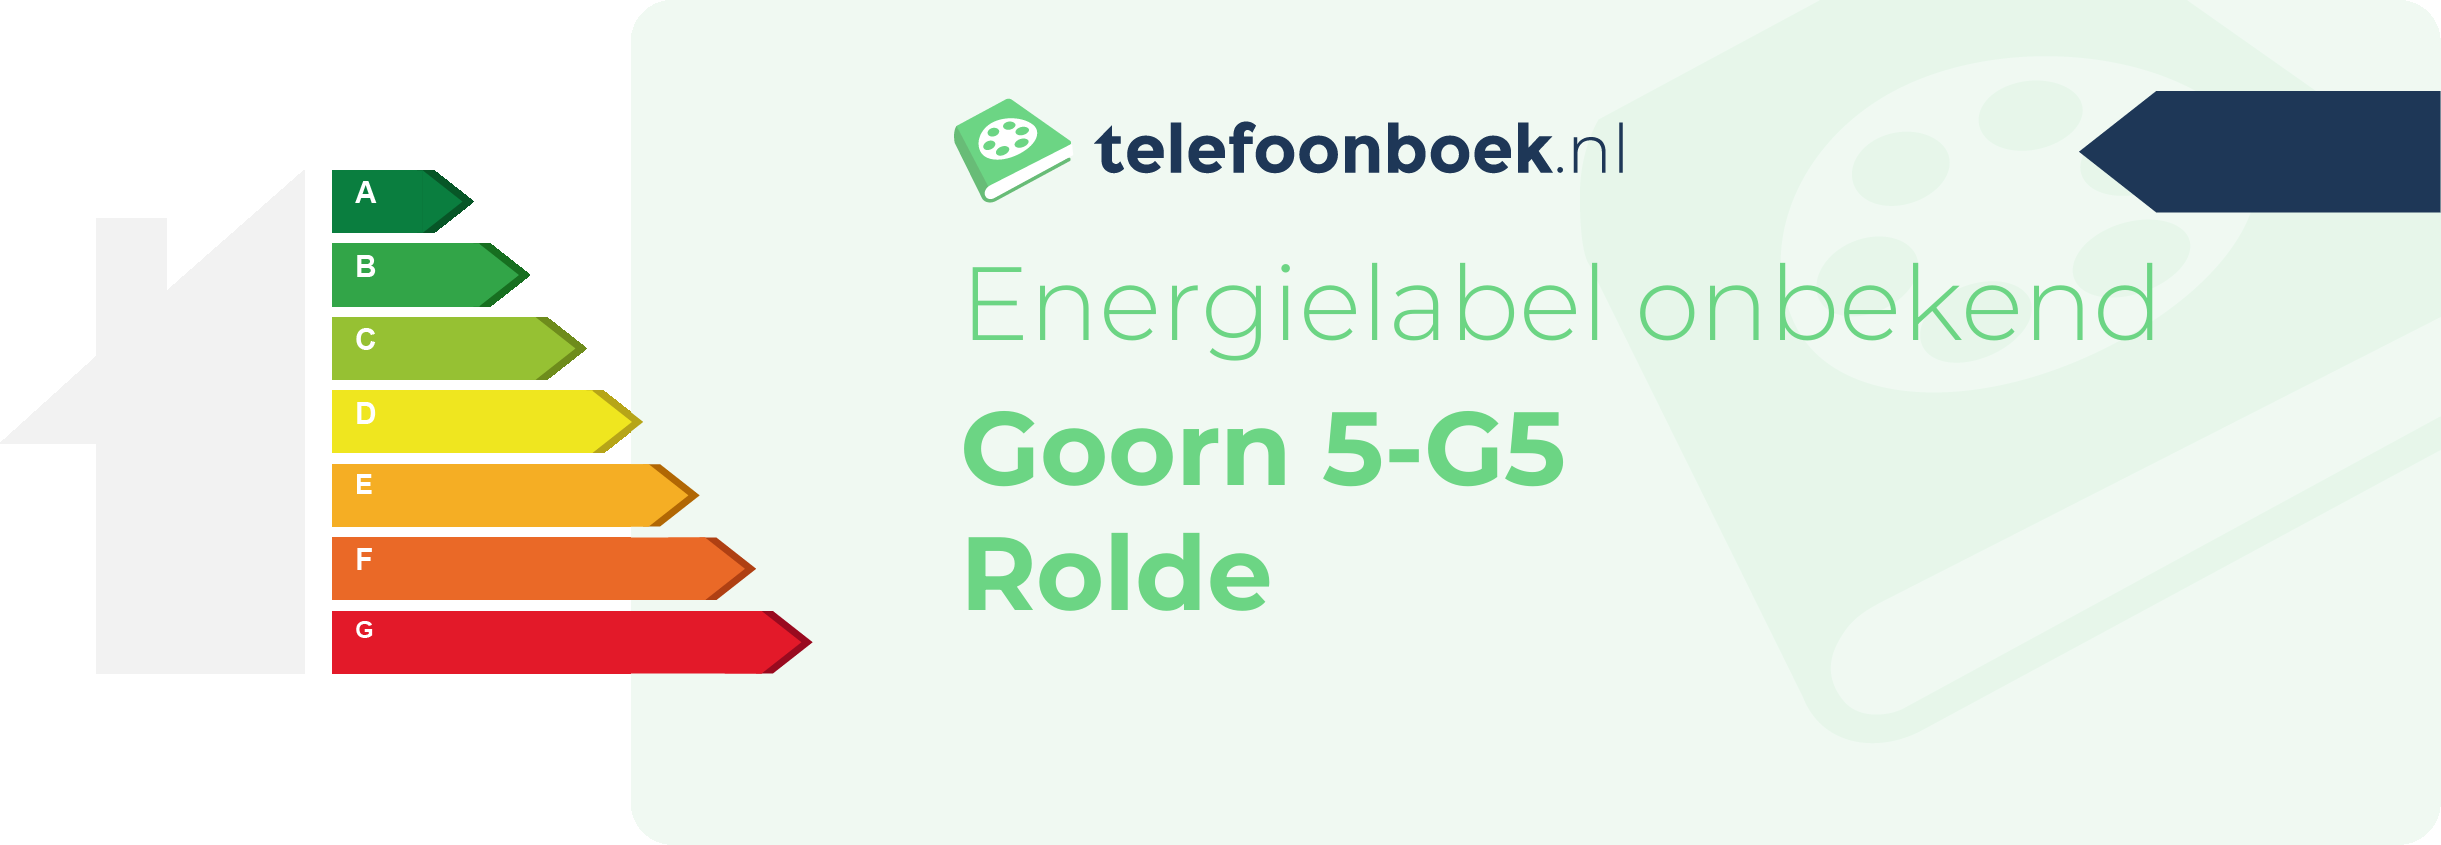 Energielabel Goorn 5-G5 Rolde